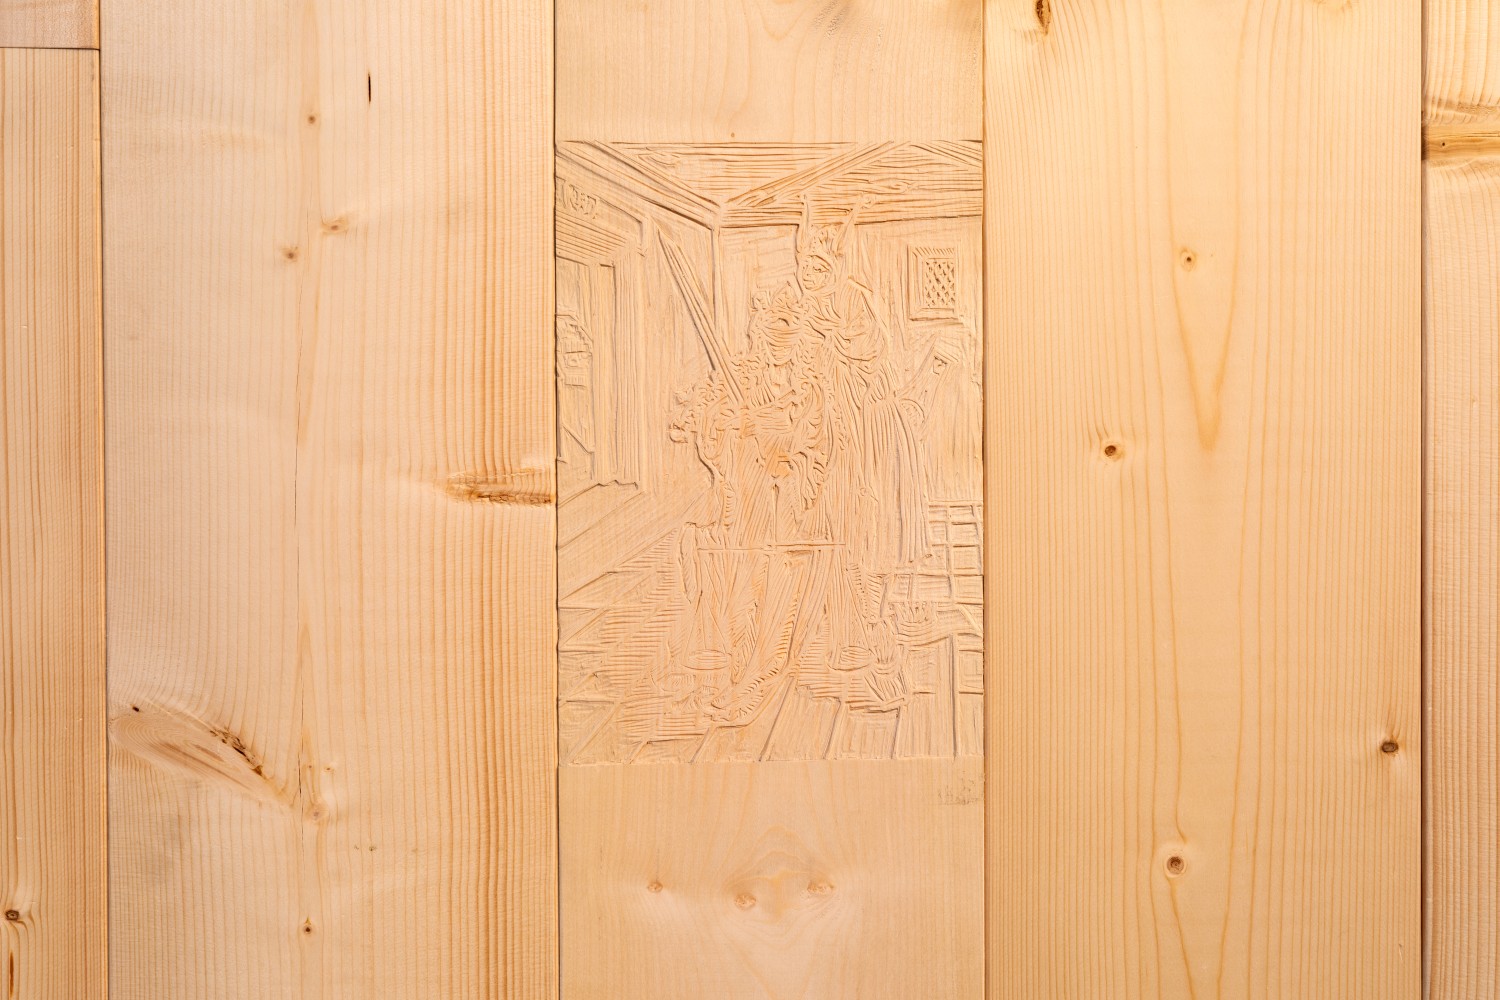 Die Arbeit mit dem Titel "Narrenschiff" von Tyler Coburn ist eine Wandinstallation, die die vorherrschende Architektur der Ausstellungsräume durchbricht und in ein Spiel mit Vorder- und Rückseitigkeit eintritt. So zeigt sich erst auf den zweiten Blick ein in die WAnd integrierter Holzschnitt, der das Verhüllen der Augen der Göttin der Gerechtigkeit, Justitia, durch einen Narren zeigt. Es ist die Reproduktion eines Holzschnitts, der mutmaßlich von Albrecht Dürer gefertigt wurde und in dem erstmals 1494 von Sebastian Brant veröffentlichten Buch Narrenschiff als Illustration erscheint. Erst seit dem 16. Jahrhundert wird die Blindheit Justitia als Symbol für Neutralität wahrgenommen. Diese Darstellung, der ersten bekannten Darstellung von Justitia überhaupt, zeigt die Göttin der Gerechtigkeit geblendet von Spott und der Korruption des Gesetzes.